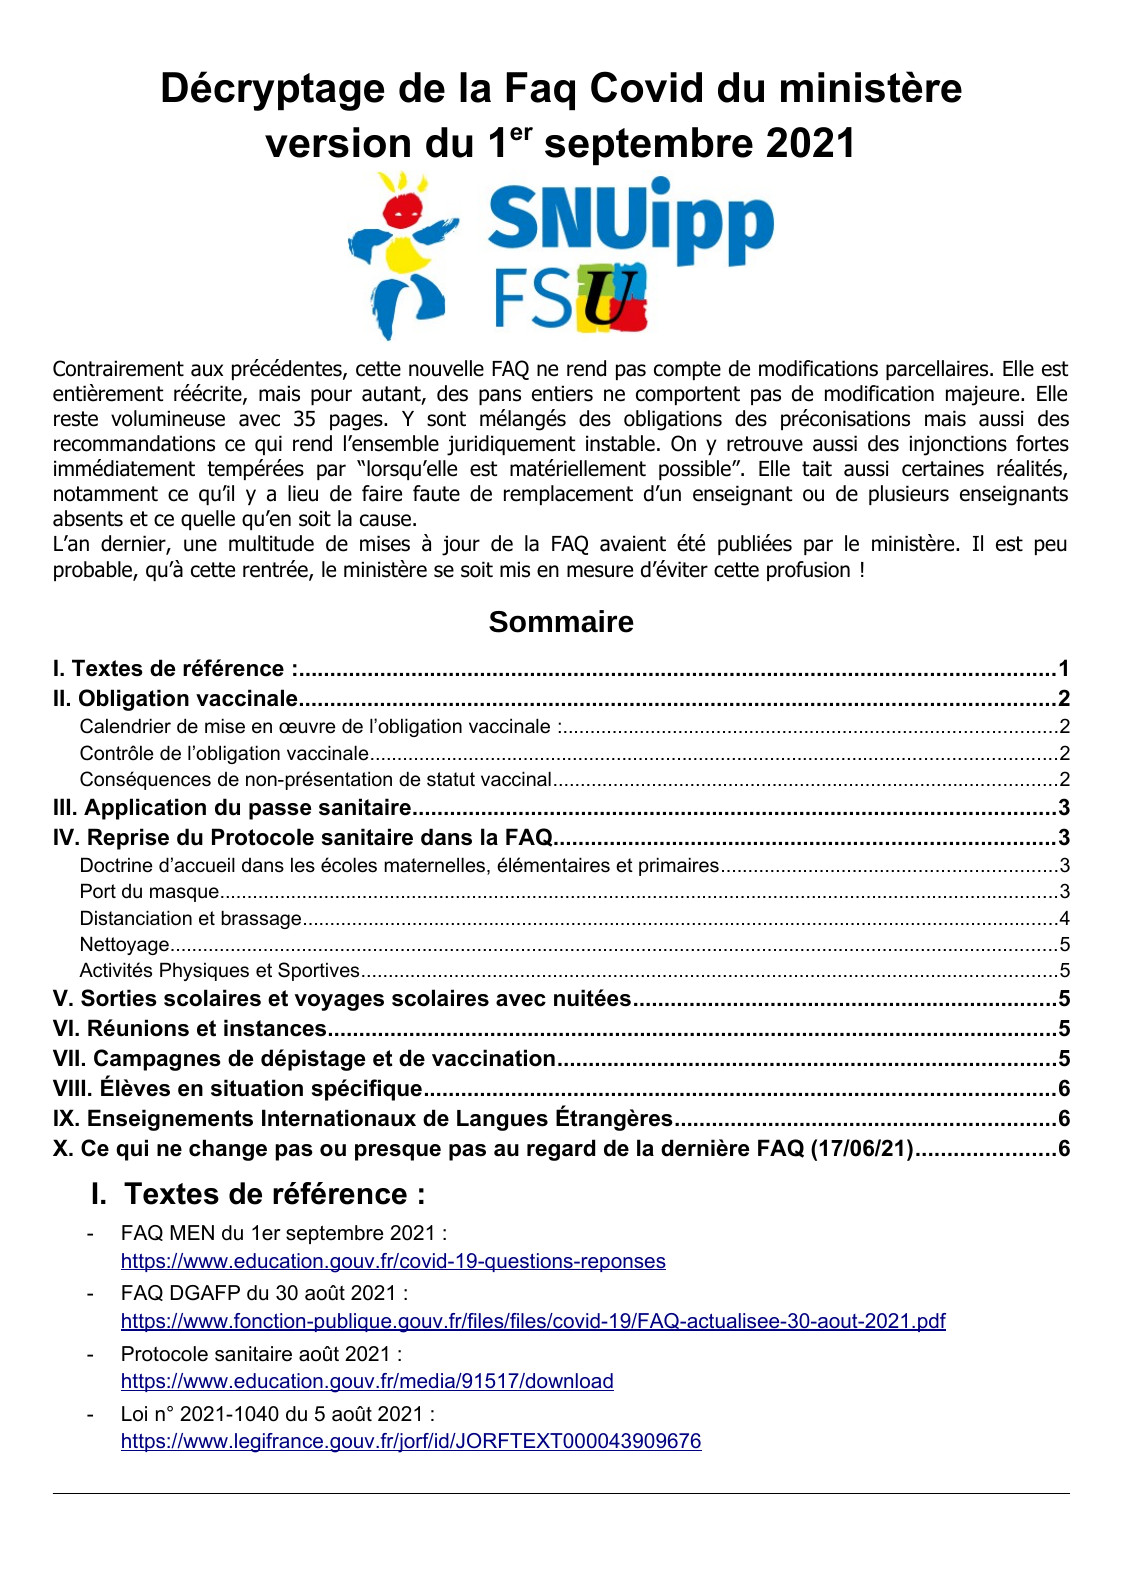 PDF - 145.2 ko